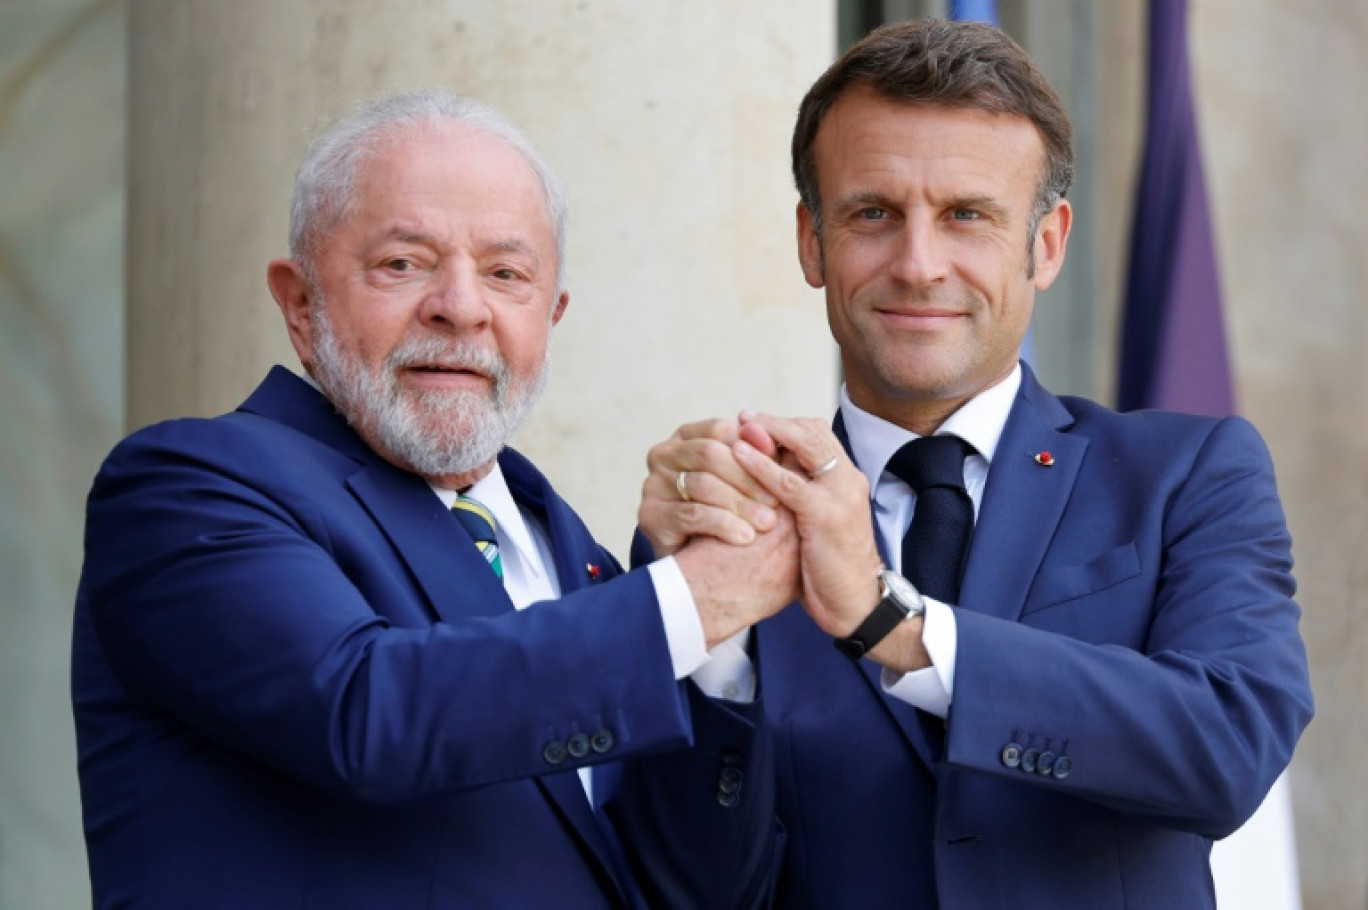 Le président français Emmanuel Macron, à droite, accueille son homologue brésilien Luiz Inacio Lula da Silva le 23 juin à Paris © Ludovic MARIN